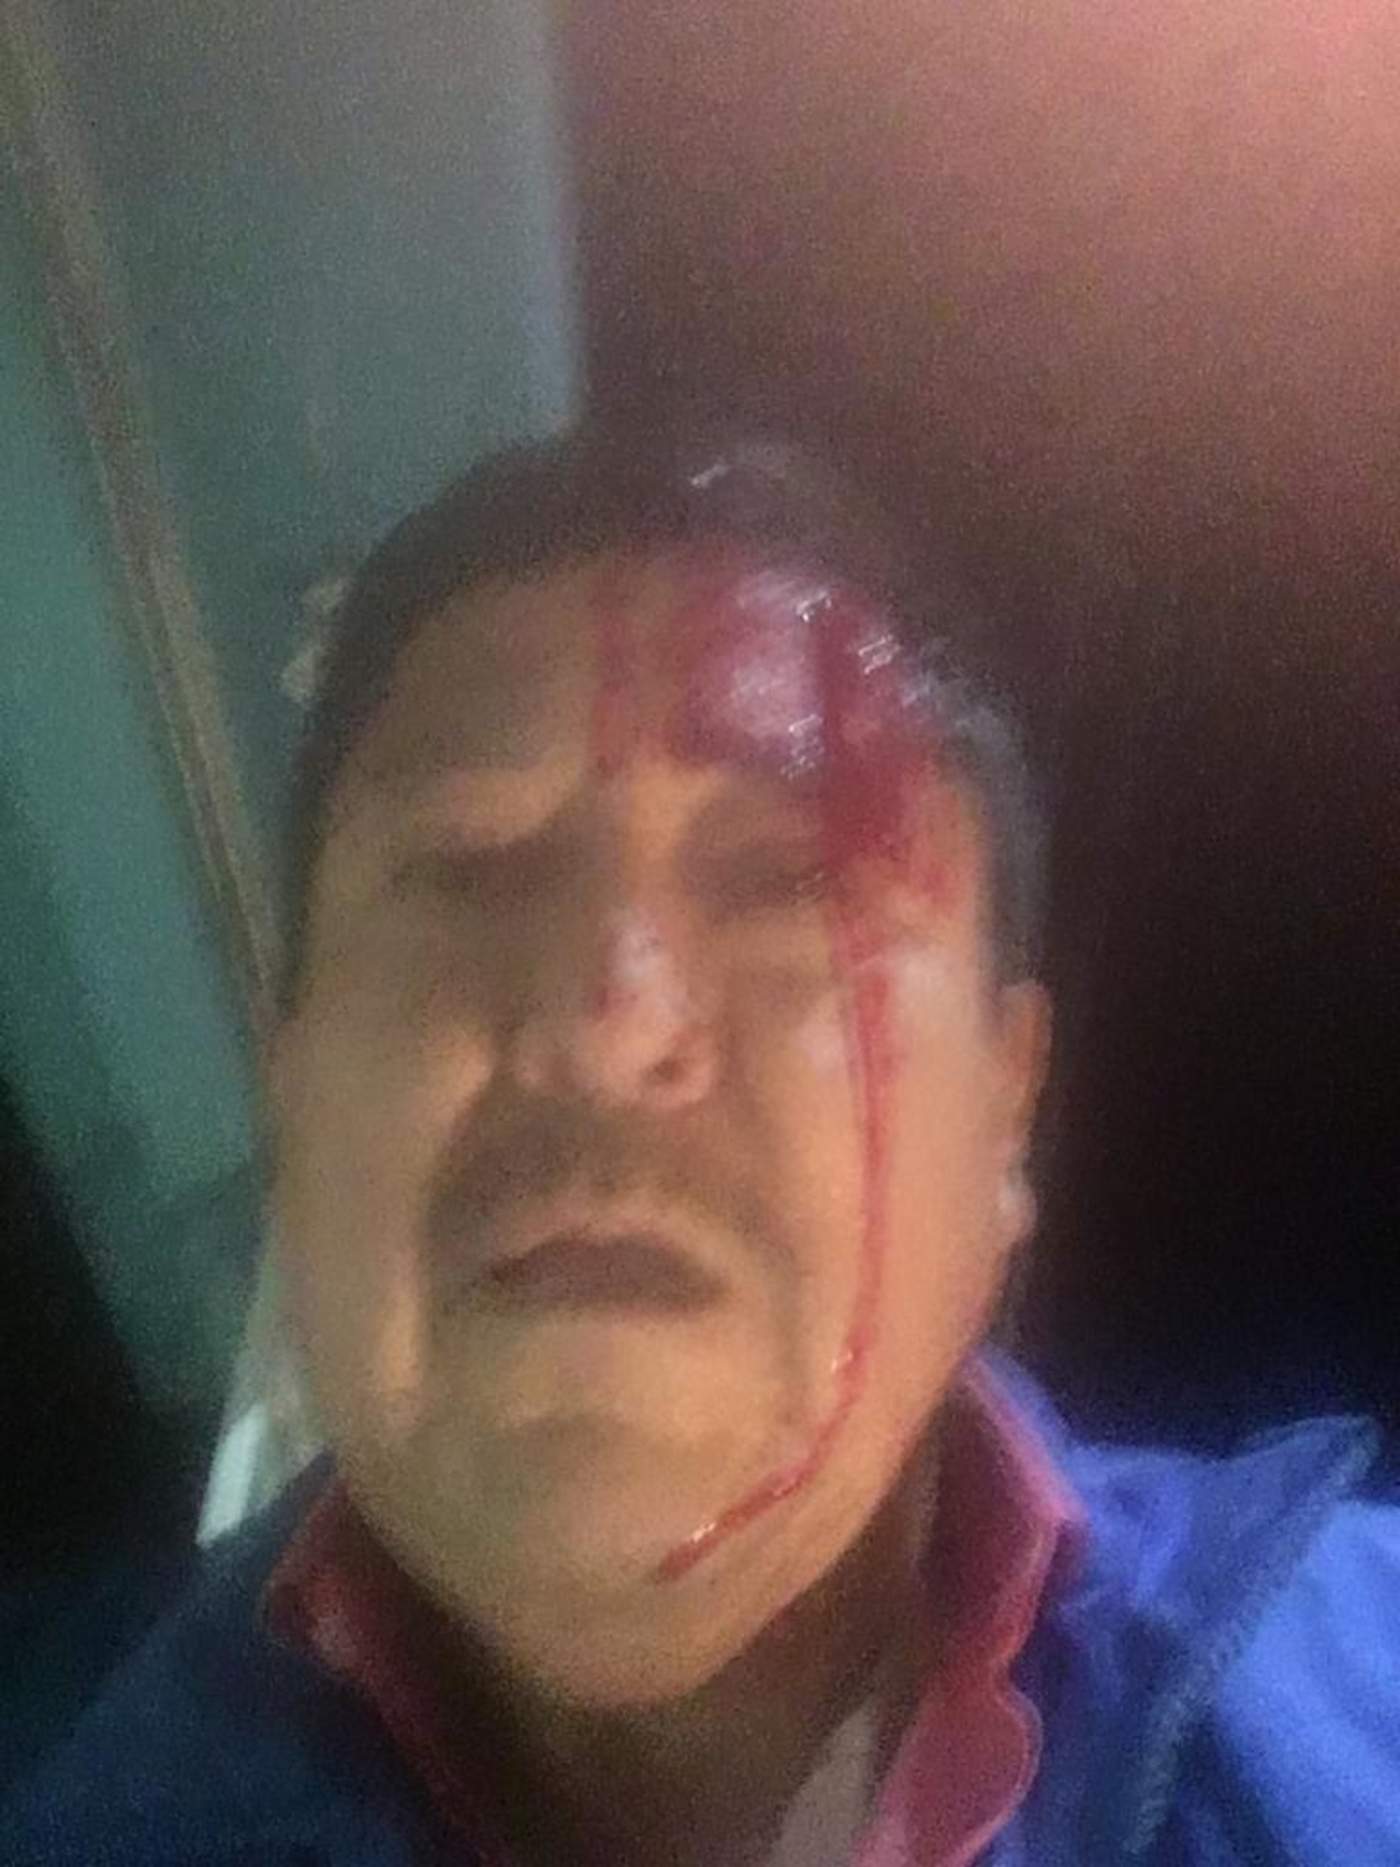 Martín Valtierra García, director del medio Contrastes de Comondú, en Baja California Sur, fue agredido a batazos esta noche, por sujetos encapuchados, cuando llegaba a su domicilio en aquella región del estado. (ESPECIAL)